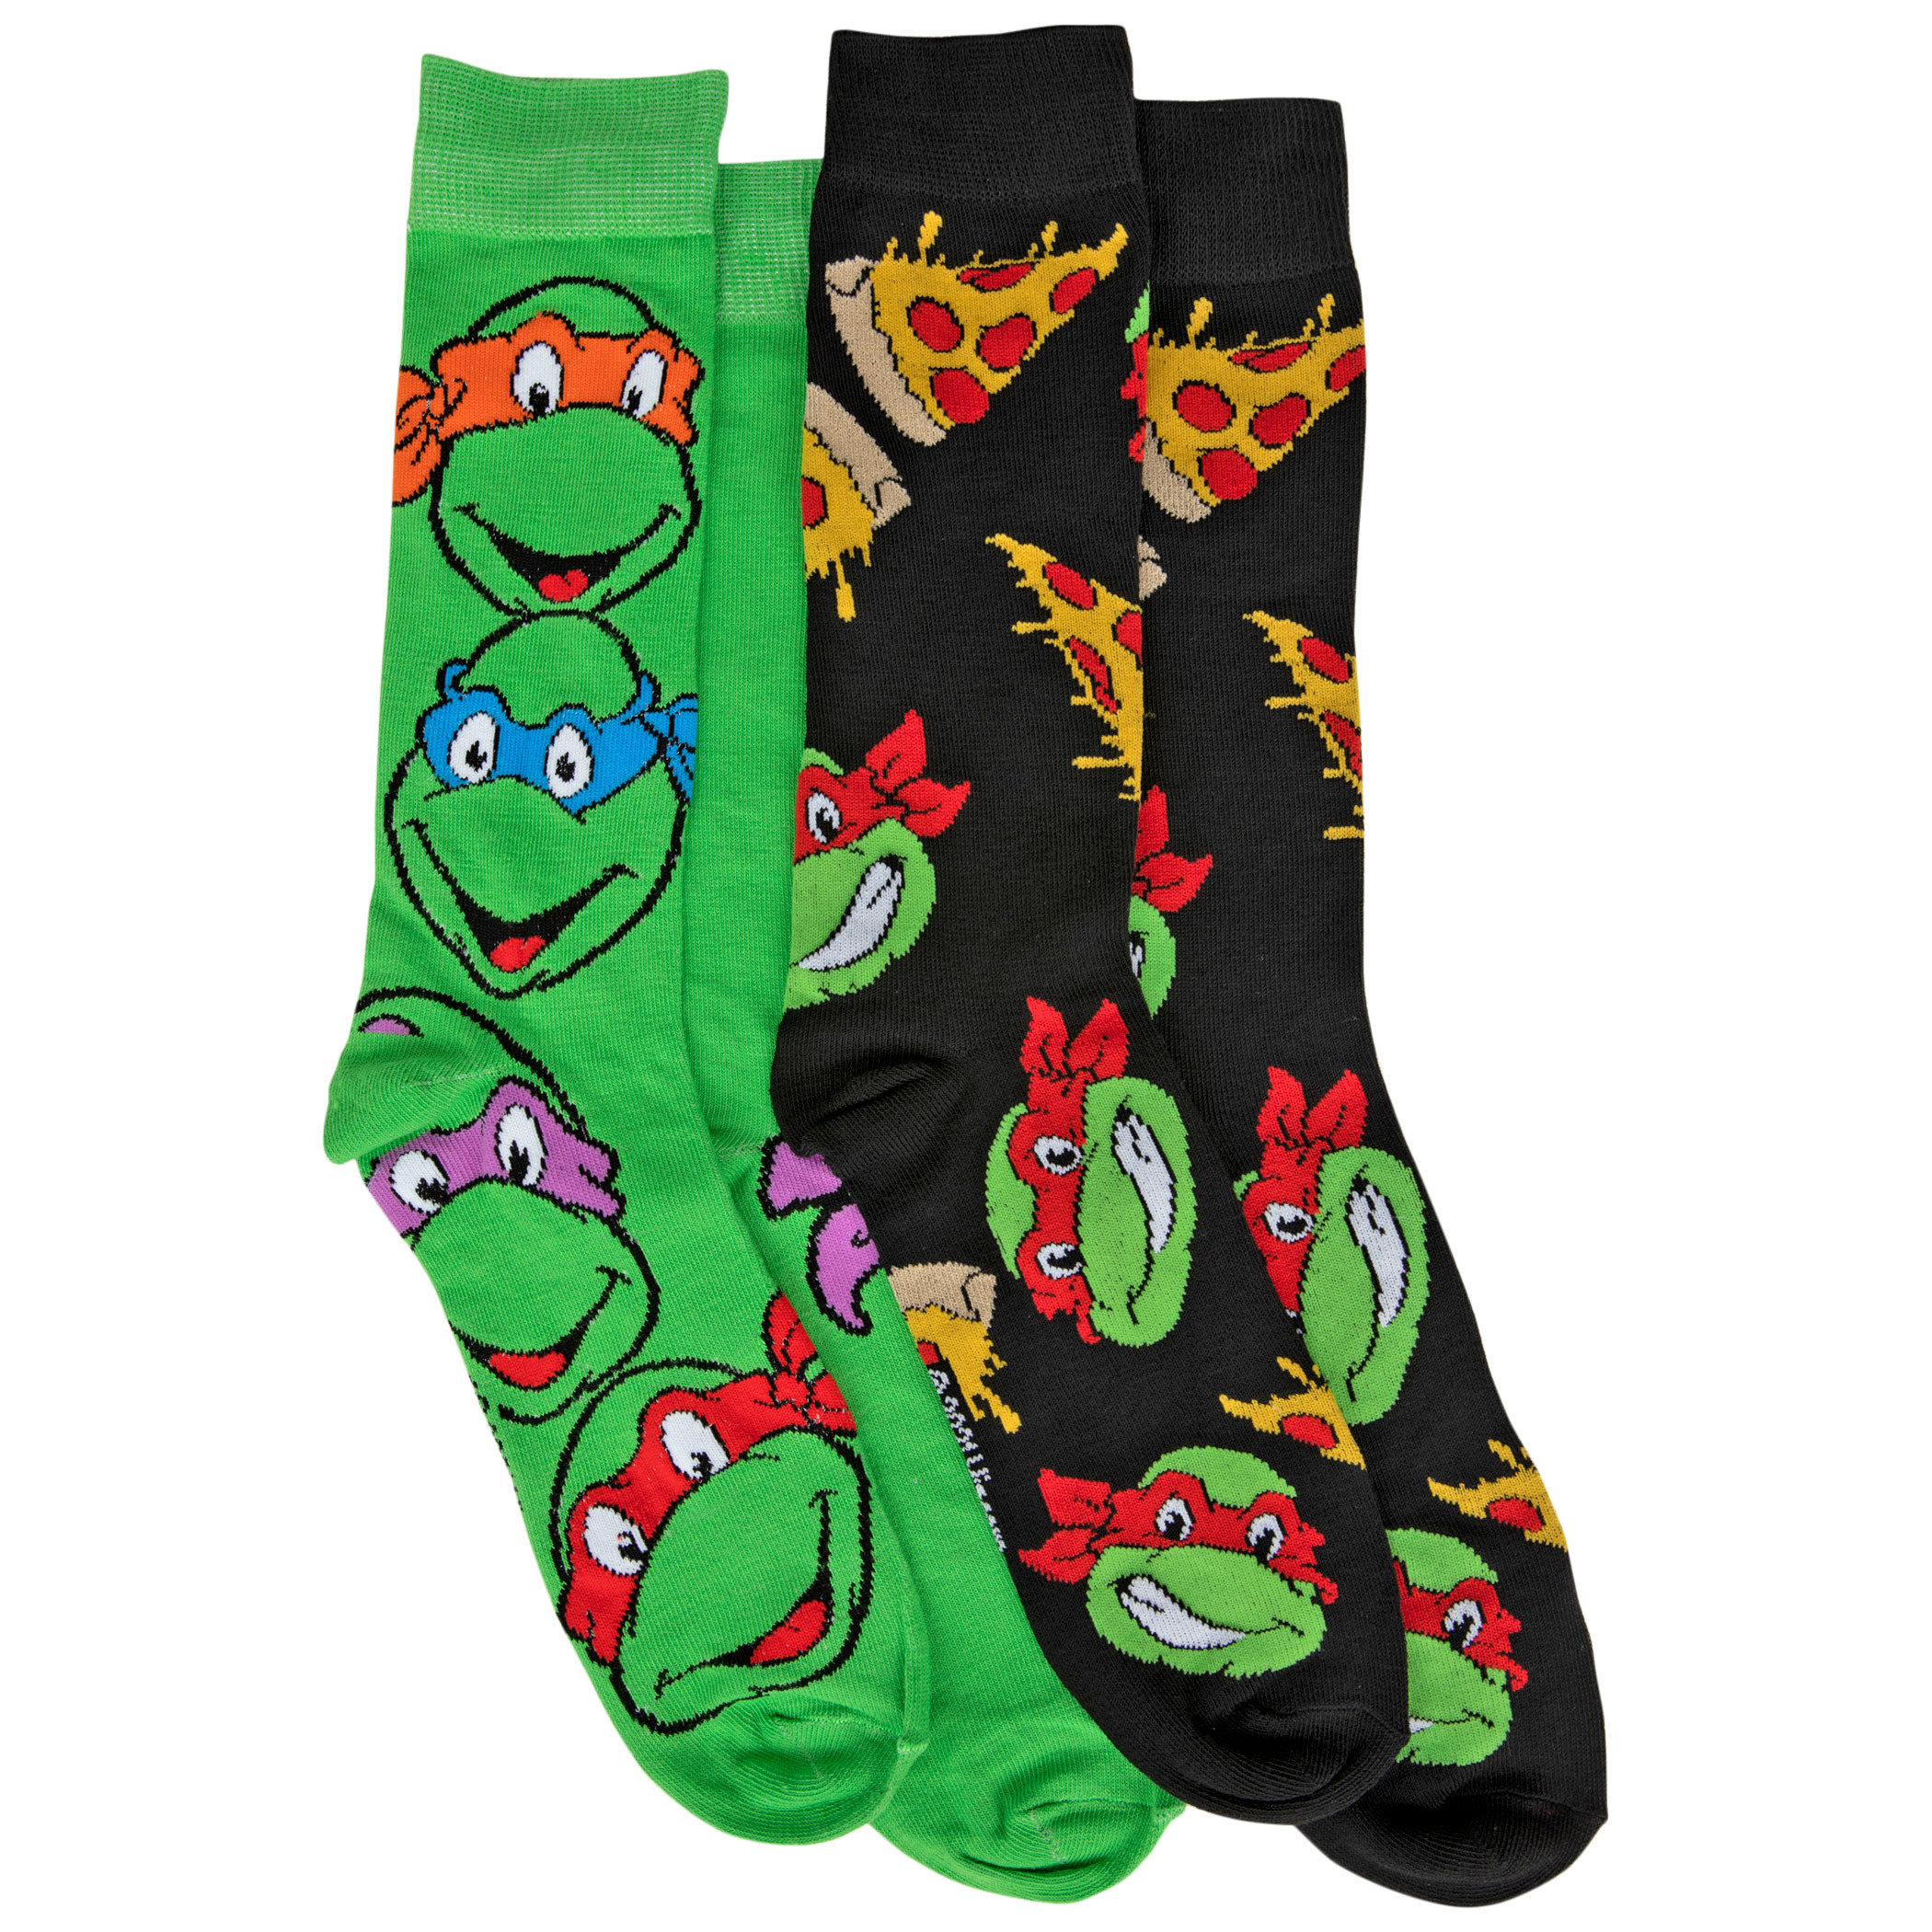 Teenage Mutant Ninja Turtles and Pizza 2-Pack Crew Socks